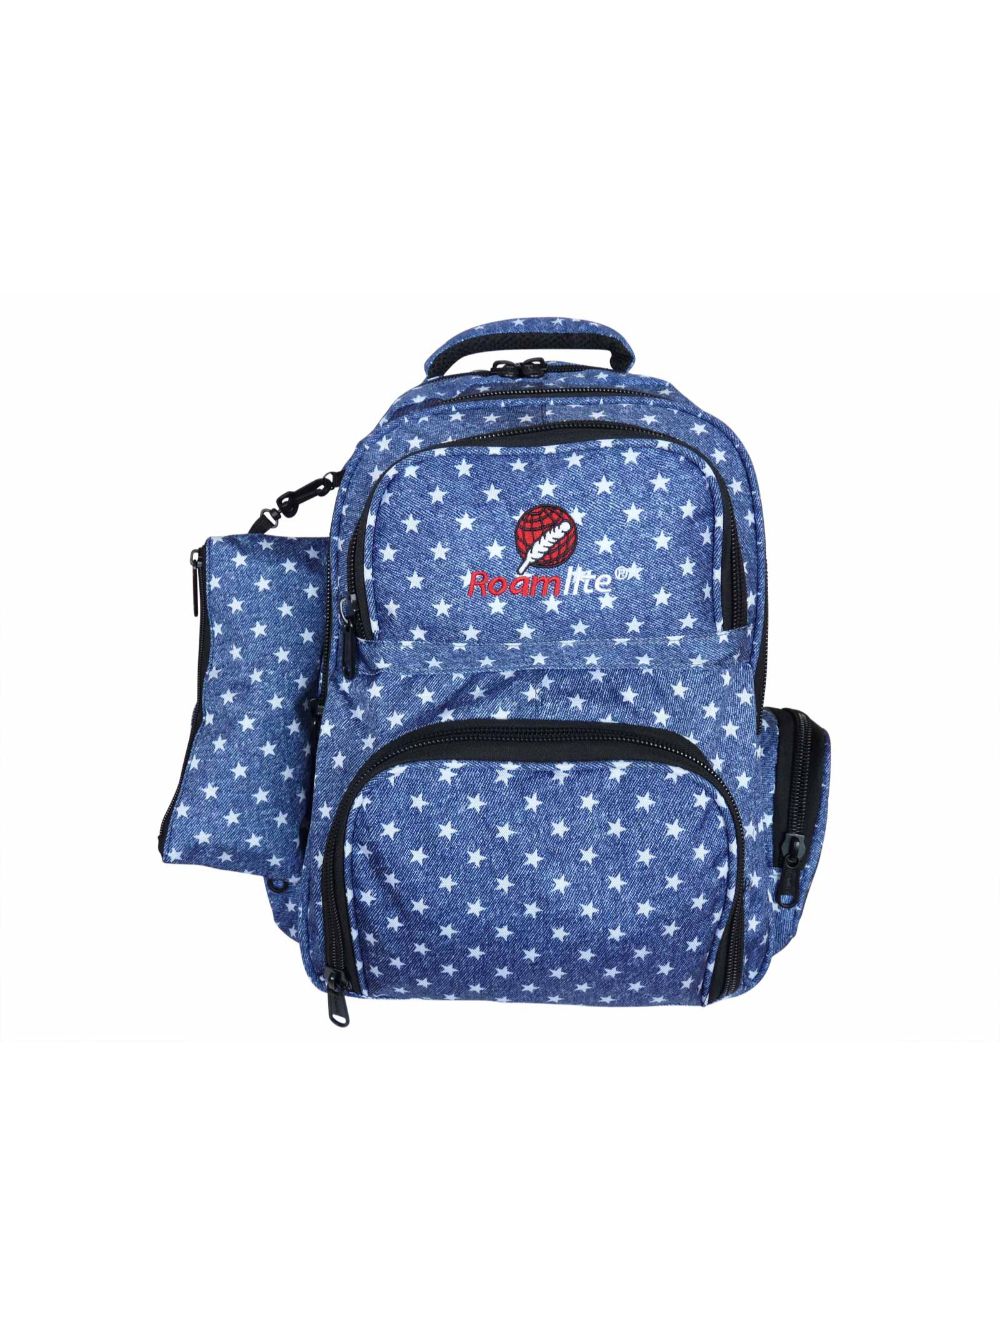 Roamlite Childrens Backpack Blue Star pattern RL840 front